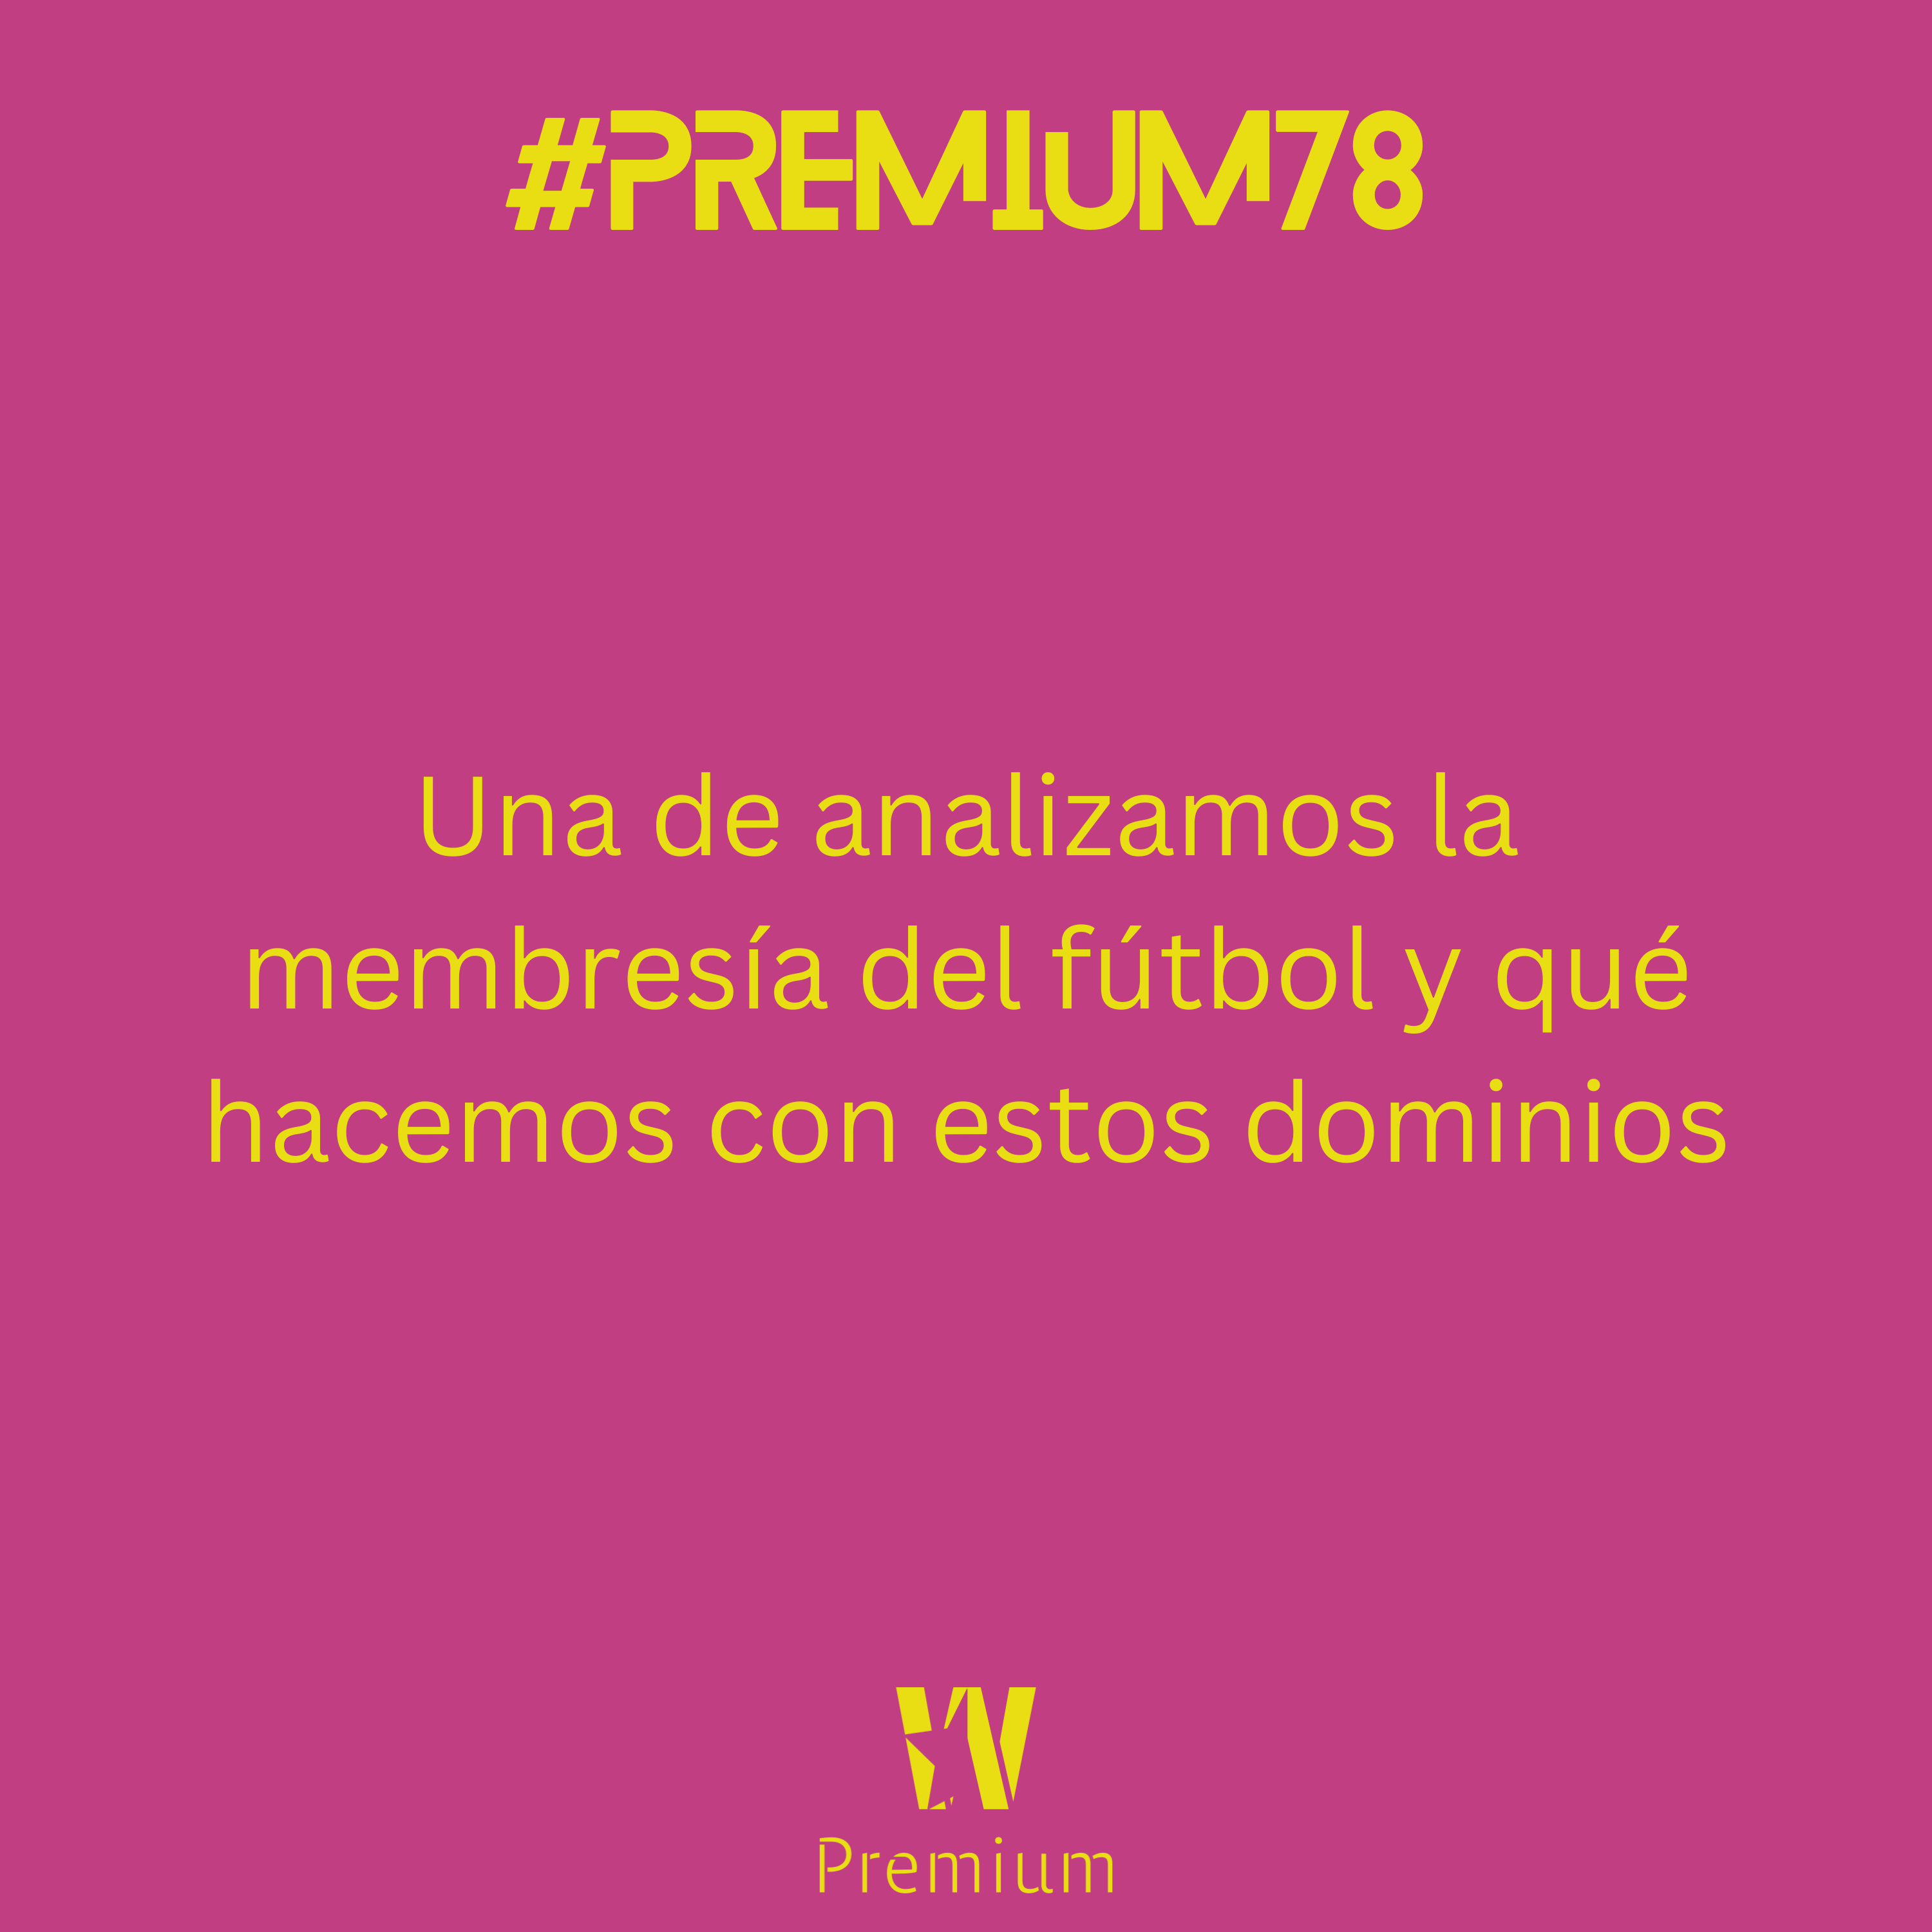 #Premium78 - Una de analizamos la membresía del fútbol y qué hacemos con estos dominios